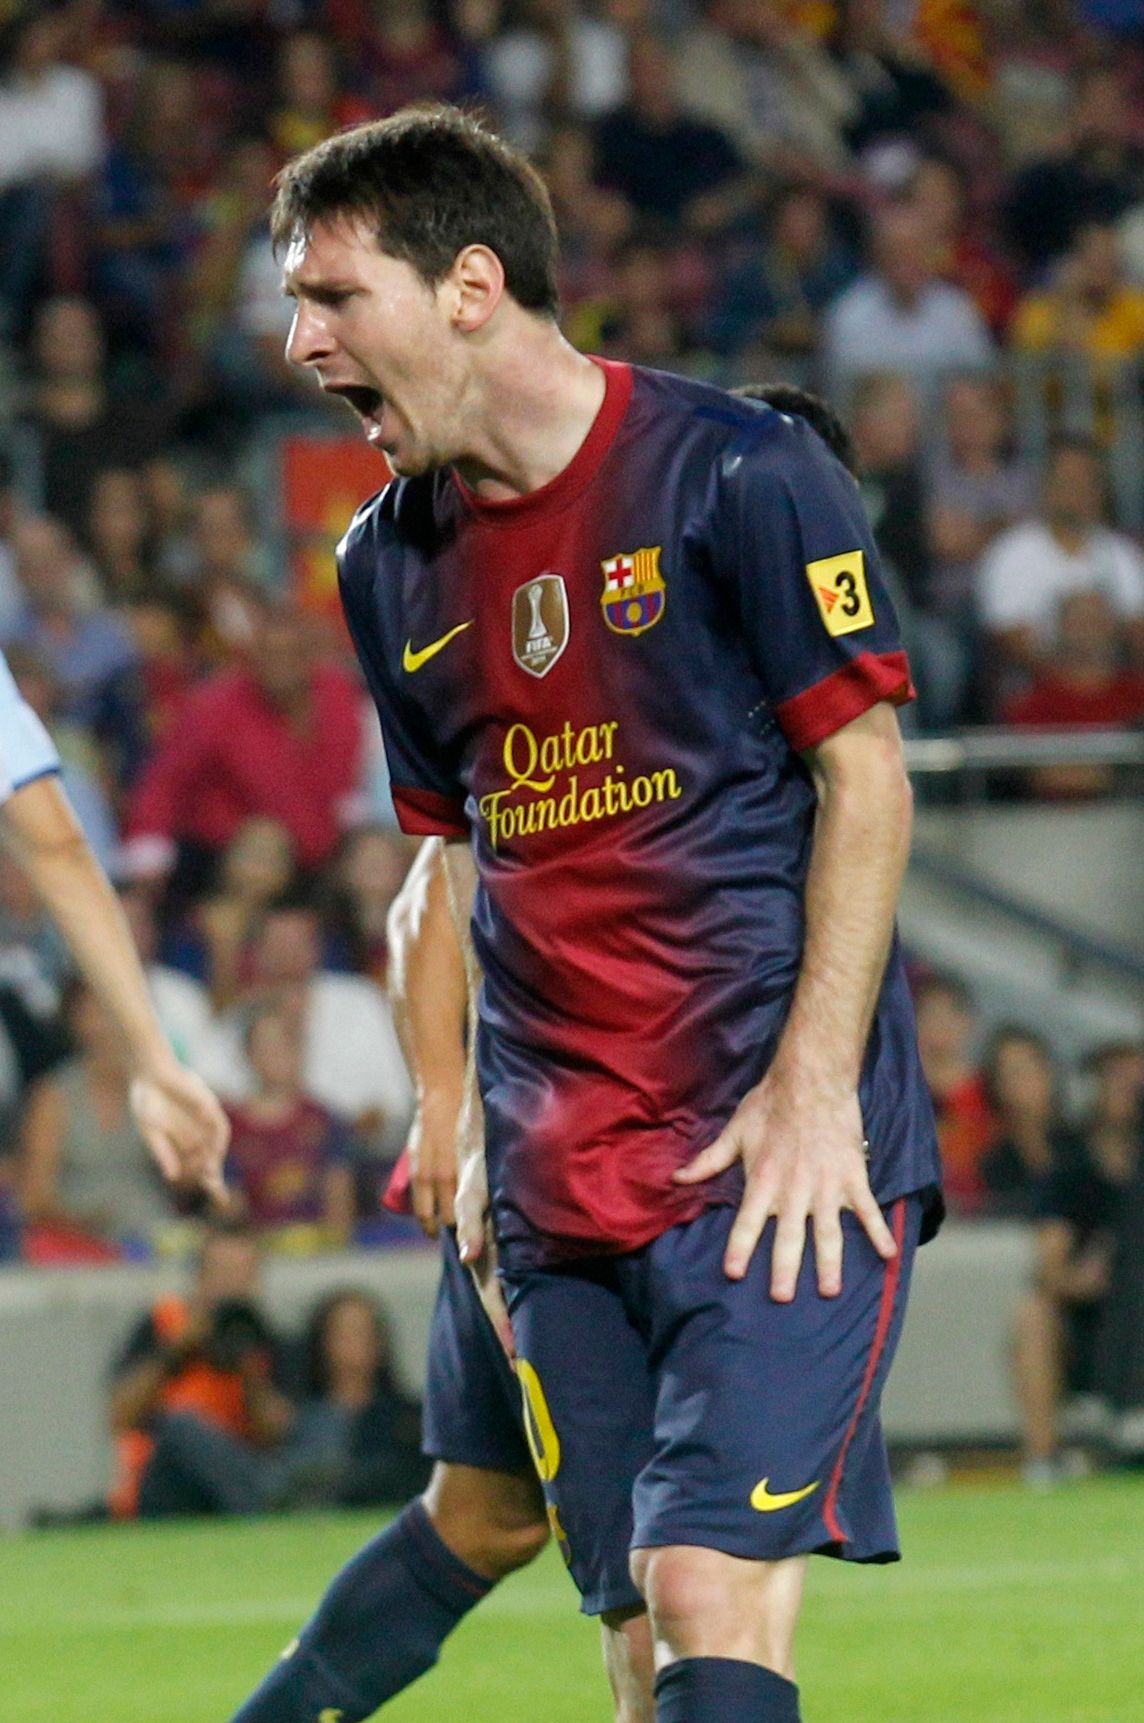 Nespokojený Lionel Messi v utkání Barcelony s Granadou